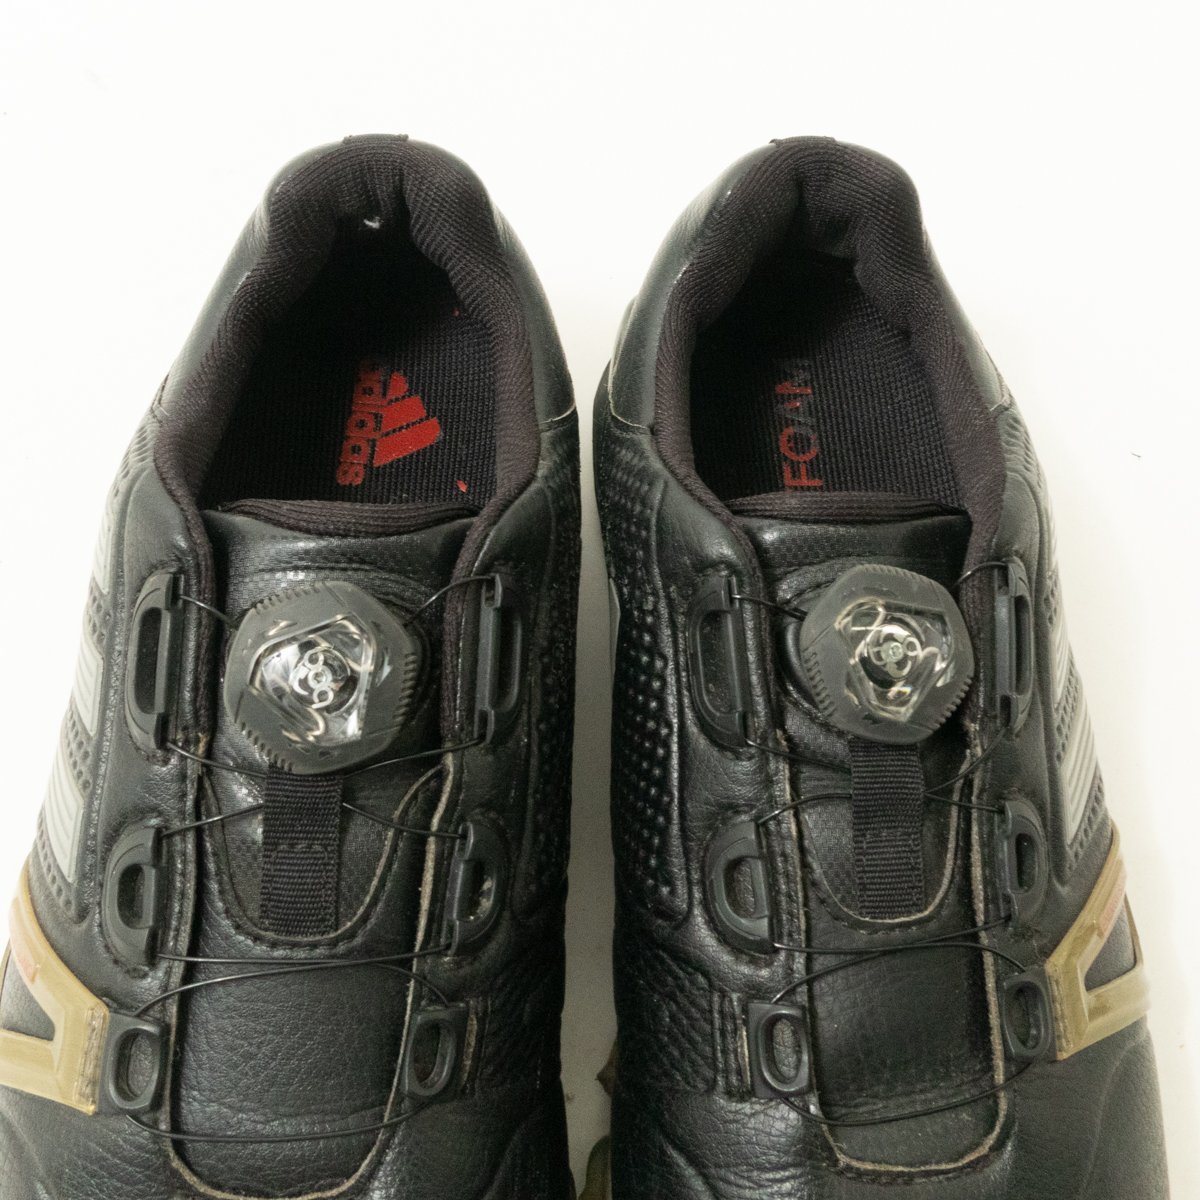 adidas アディダス F33372 POWERBAND TOUR Boa ゴルフシューズ ブラック 黒 グレー 25.5cm メンズ カジュアル スポーツ GOLF シューズ 靴_画像3